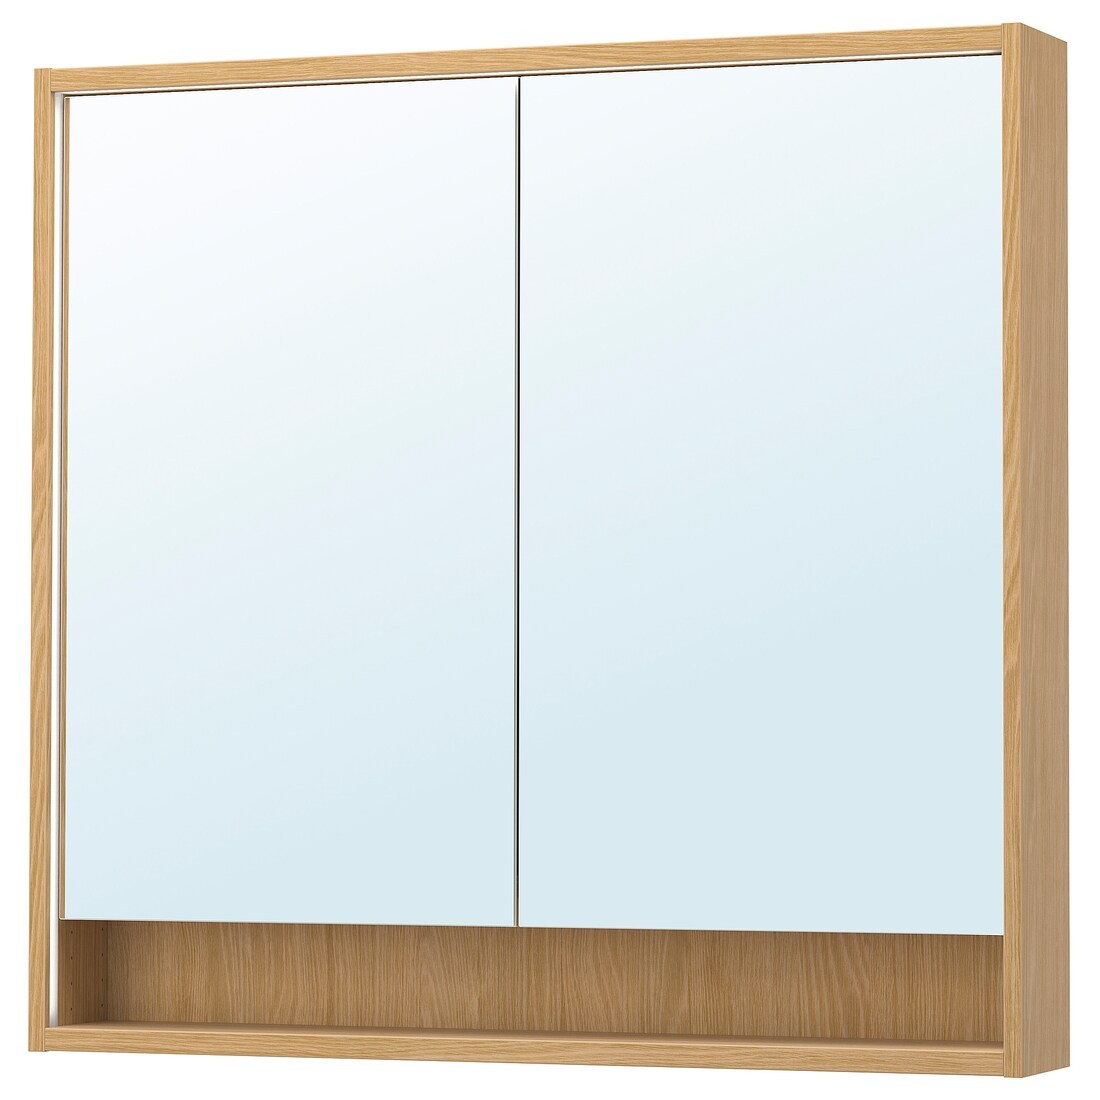 FAXÄLVEN Зеркальный шкаф со встроенной подсветкой, имитация дуба, 100x15x95 см